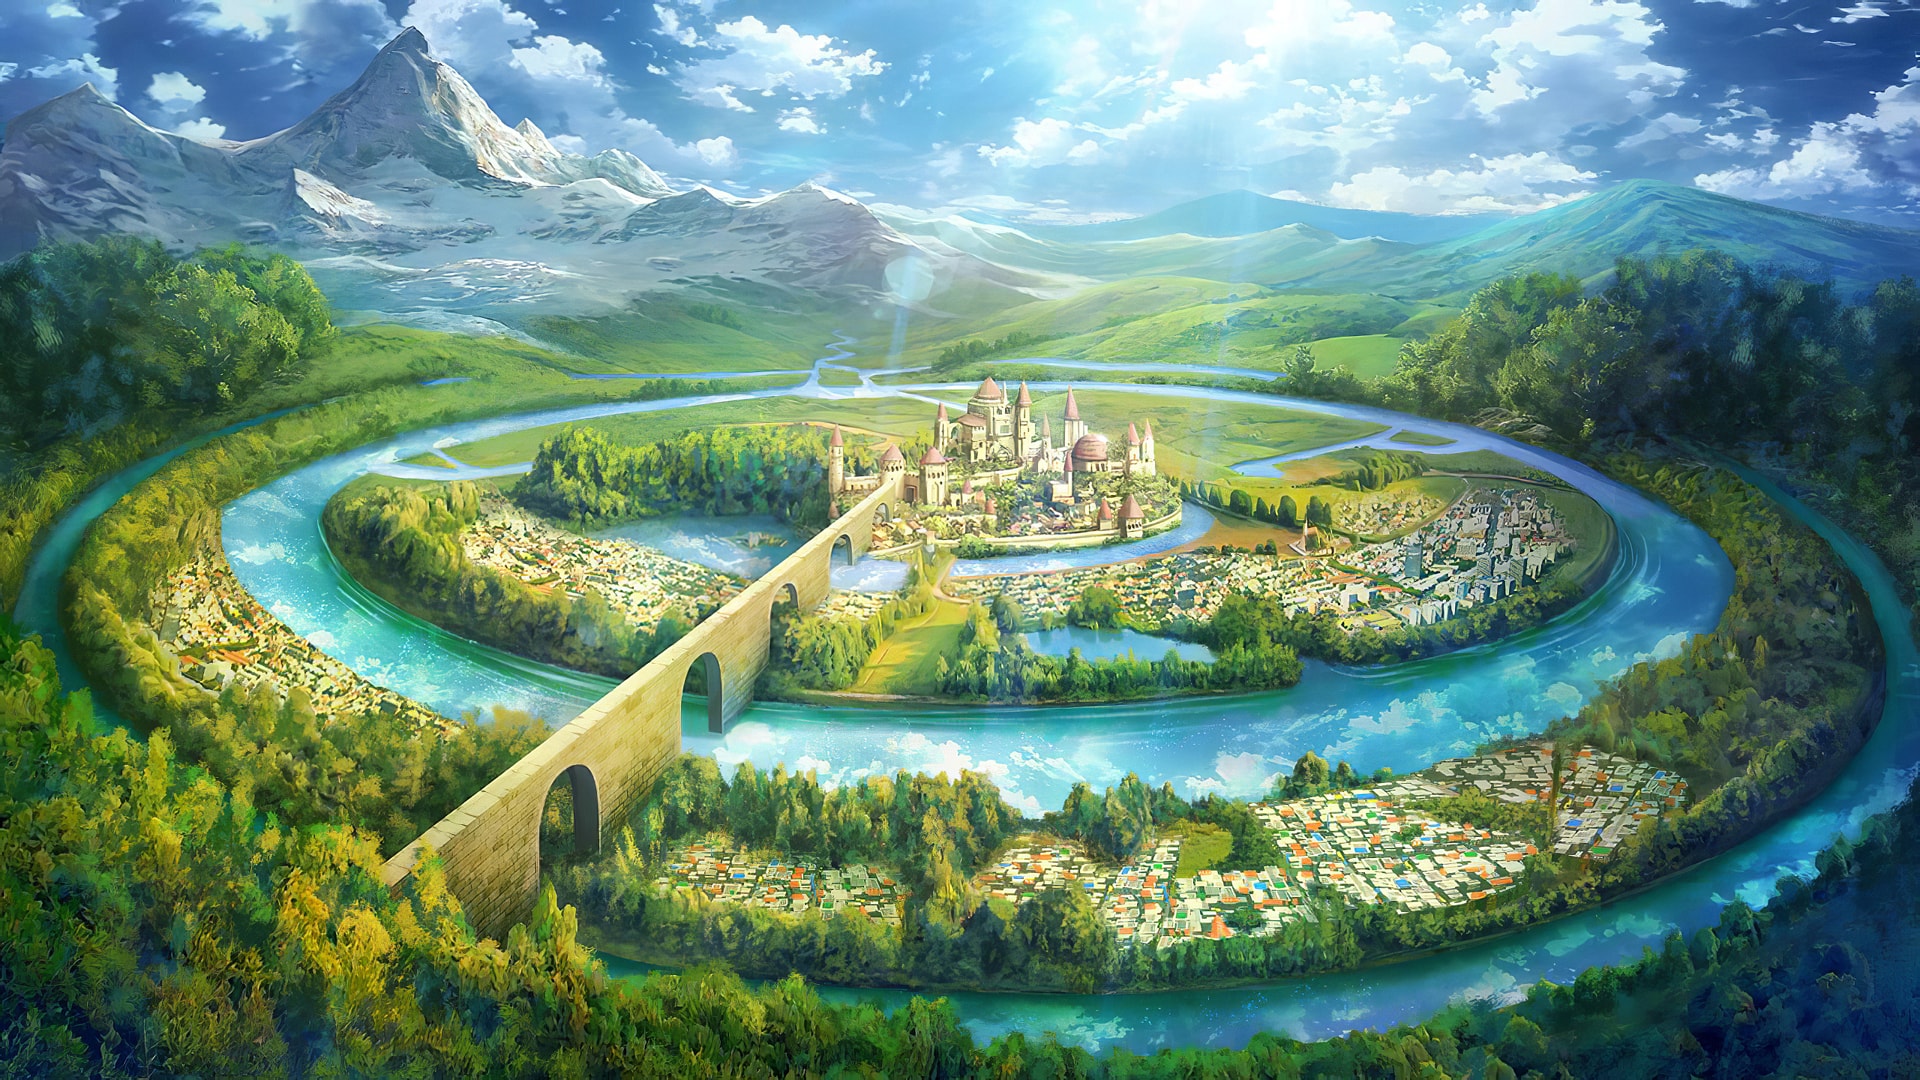 群山围绕间美丽城堡宛如人间仙境插画风景